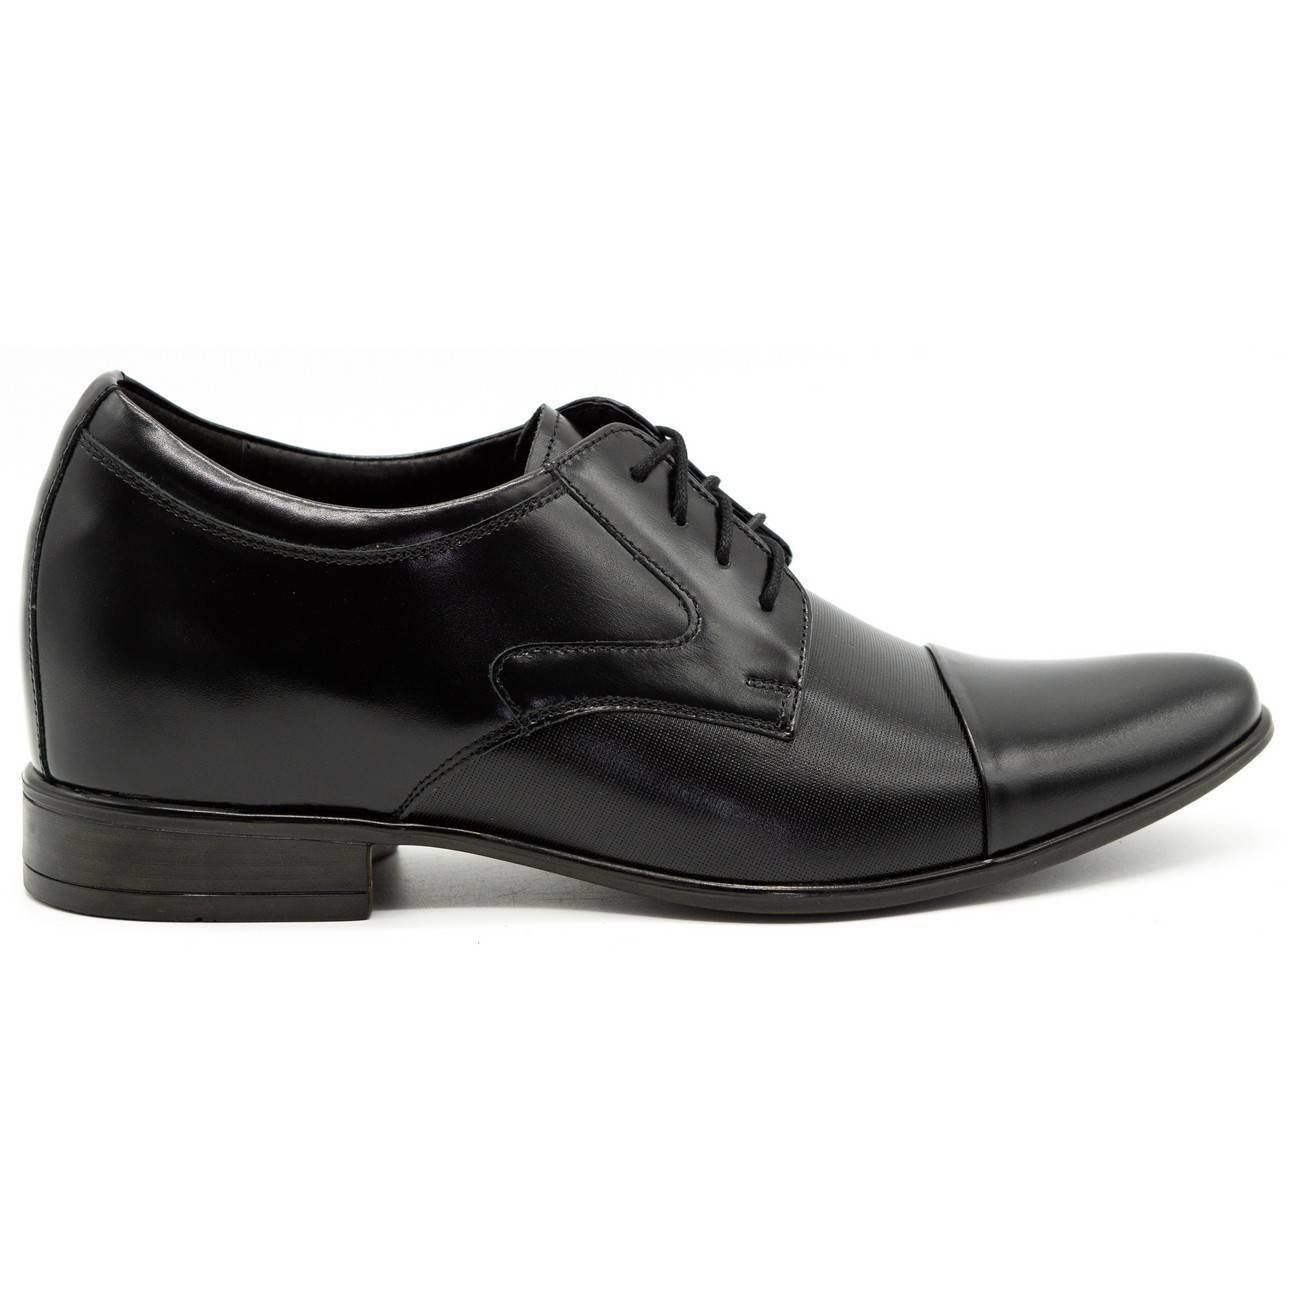 Buty męskie wizytowe P10 podwyższające czarne - Buty Olivier